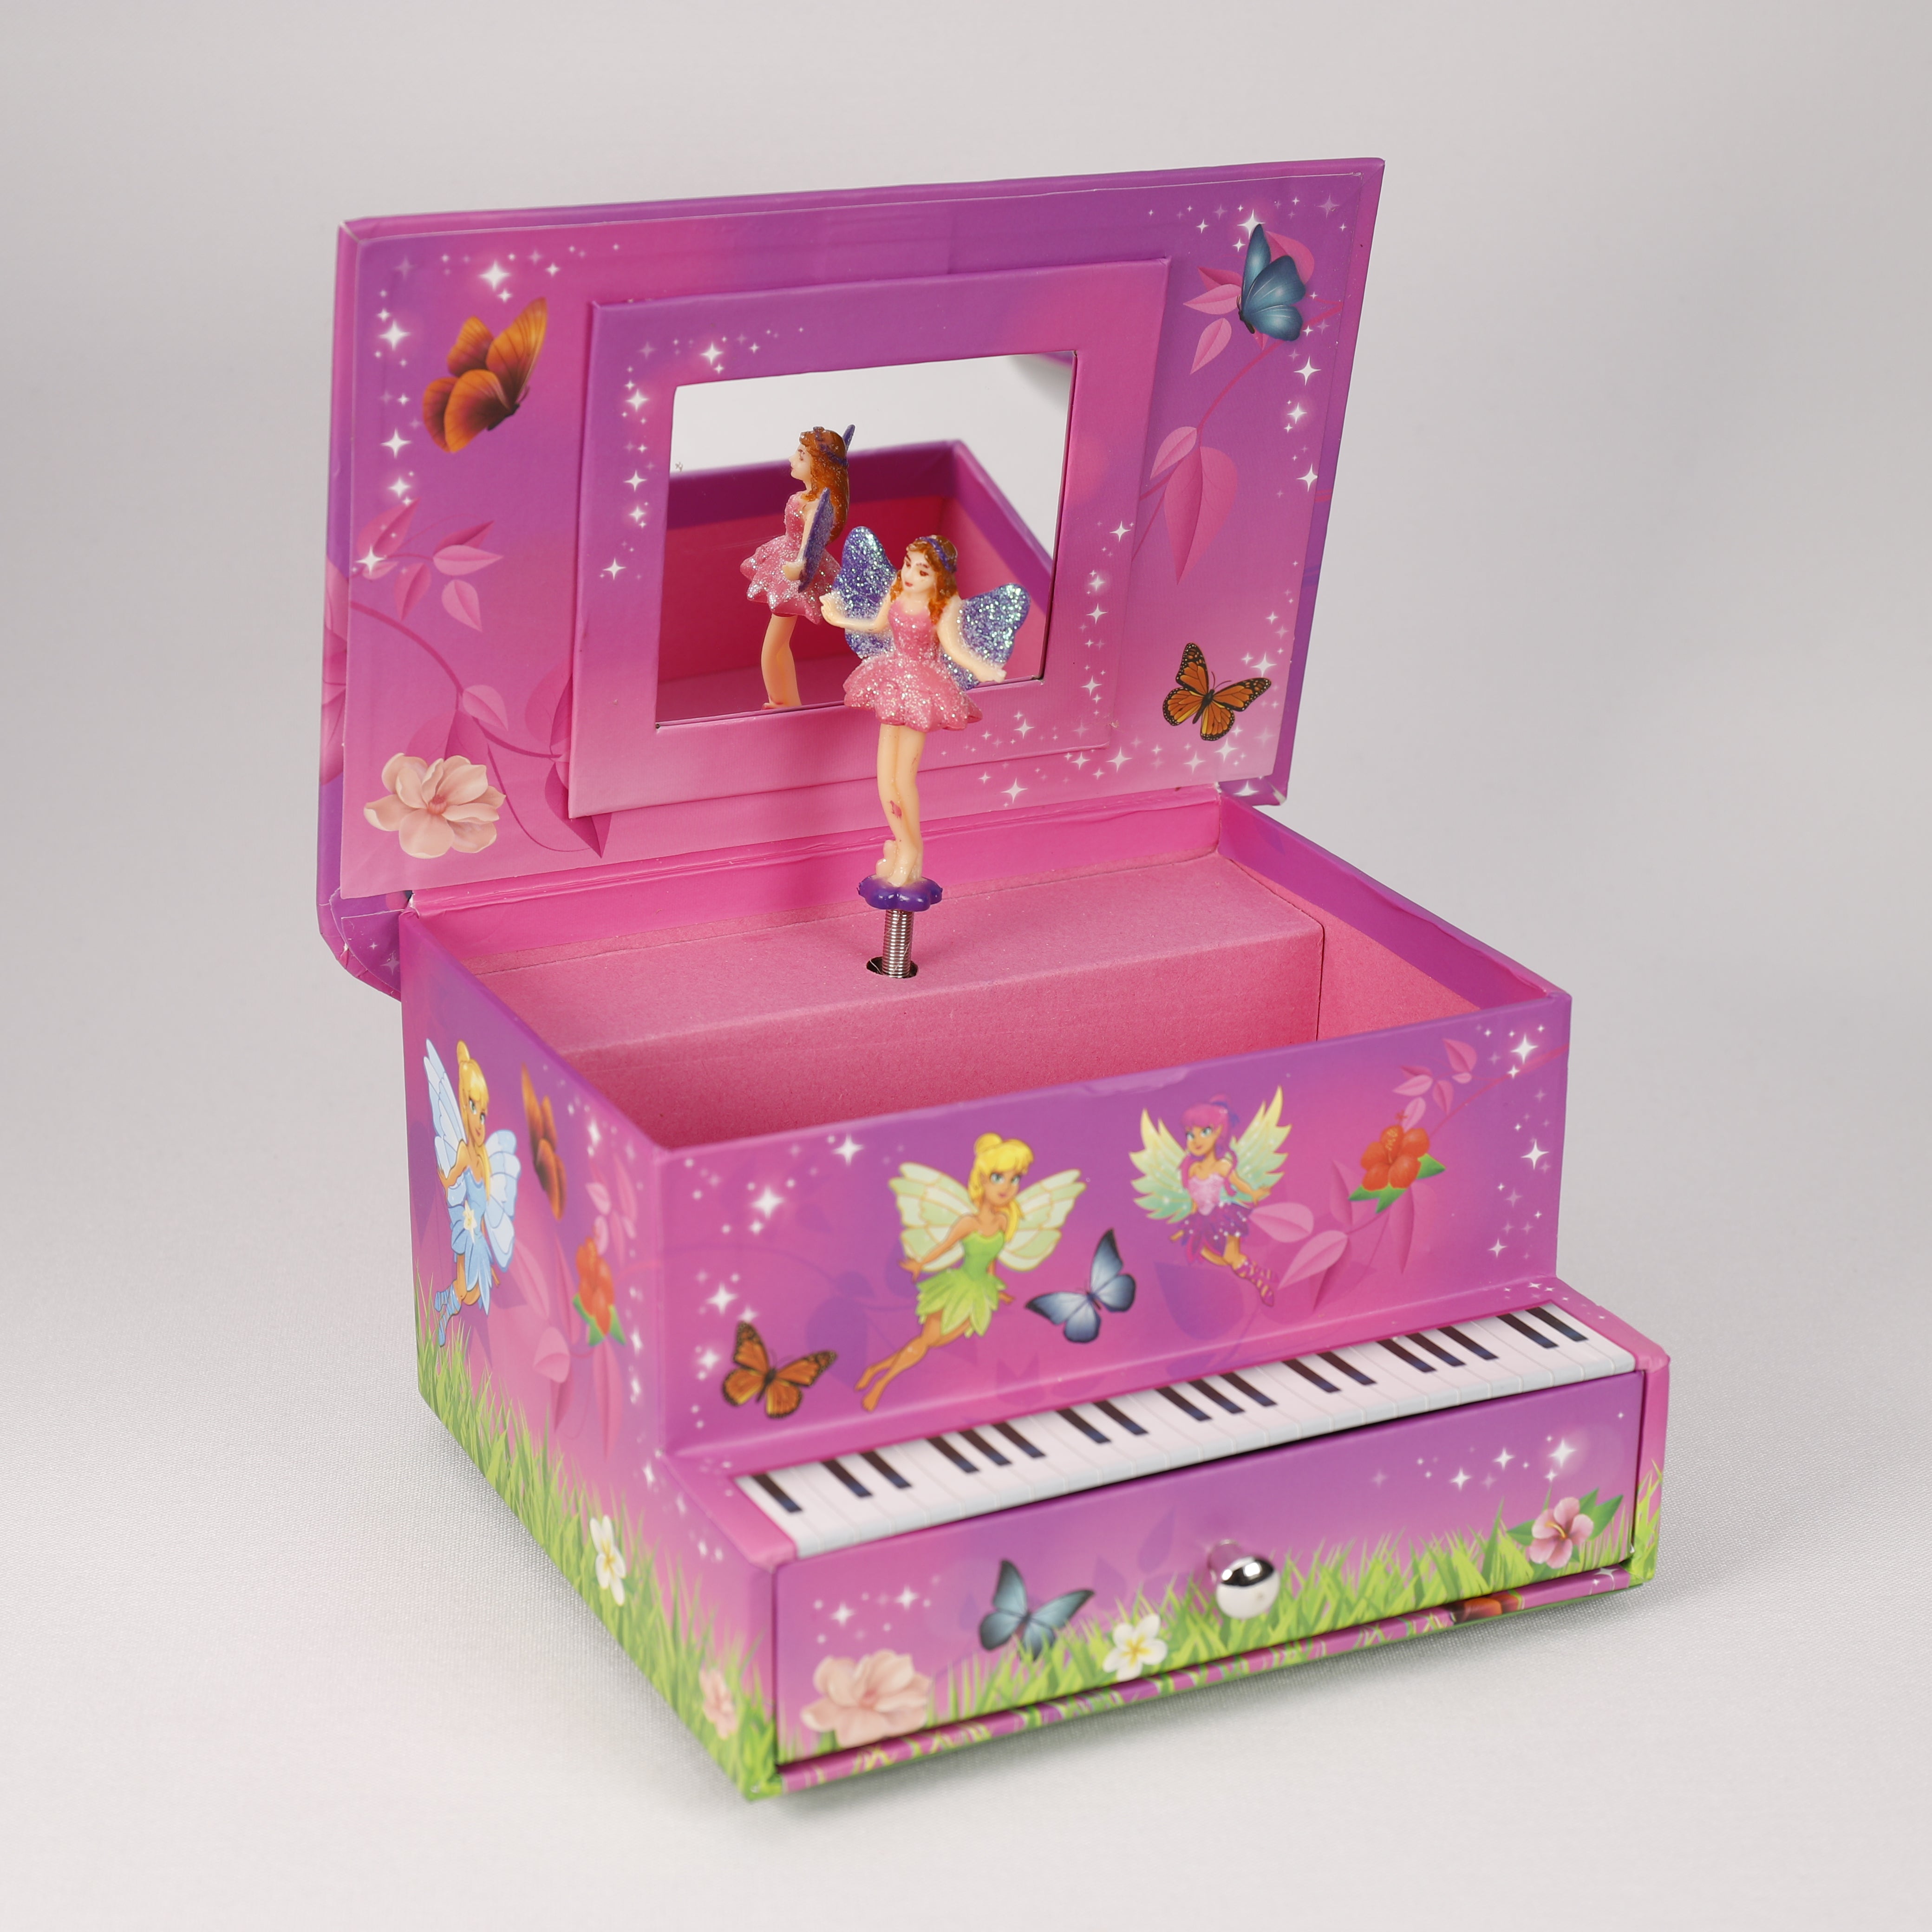 Fairies Klavier mit Schublade, Rosa Schmuckkästchen mit Prinzessin, TOP Spielzeug